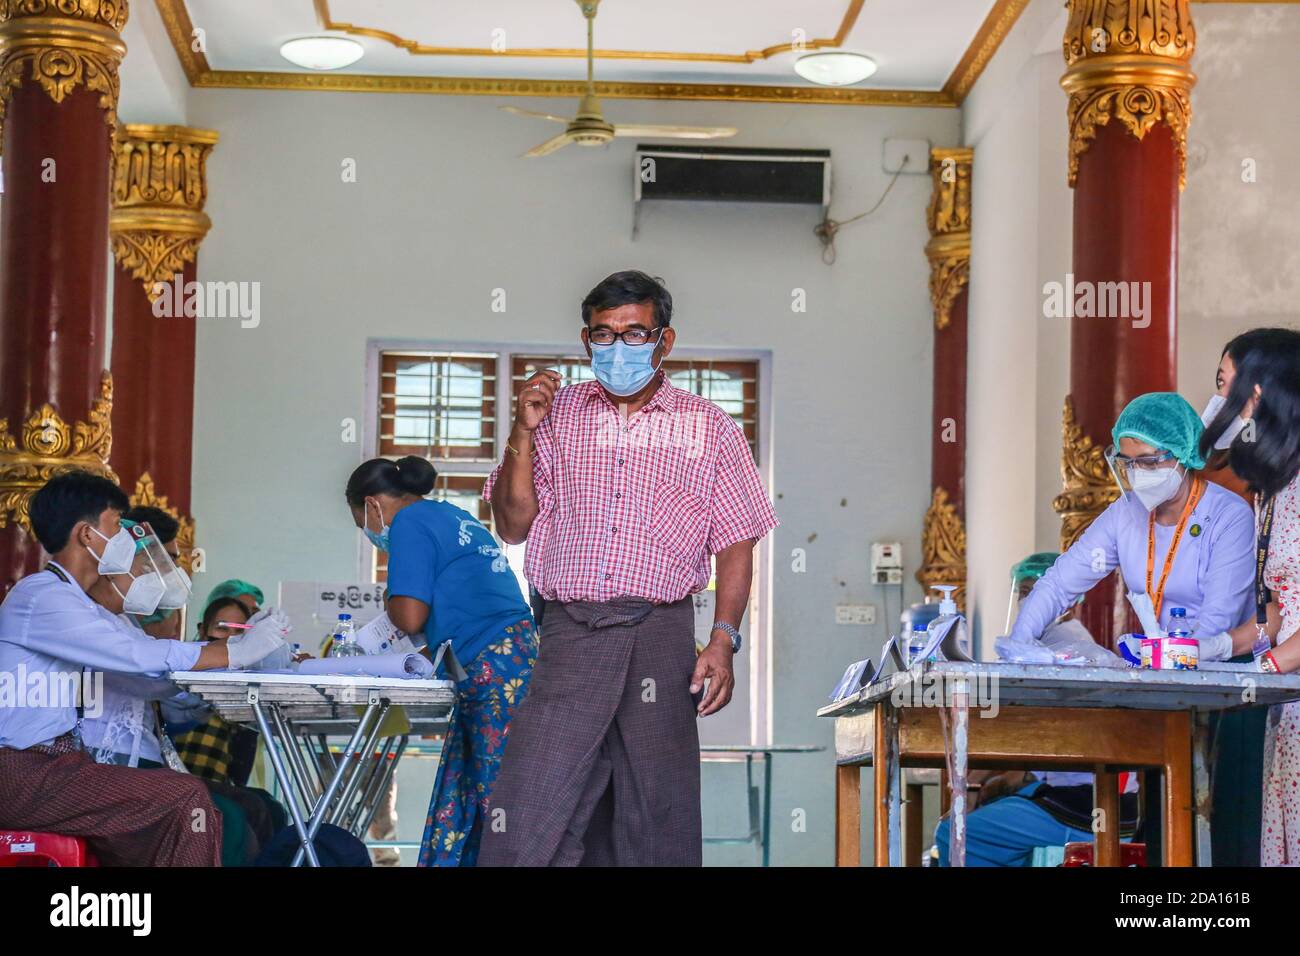 Mandalay, Myanmar. 08 novembre 2020. Un homme sort du bureau de vote après qu'il ait terminé son vote.les citoyens du Myanmar ont voté lors de la deuxième élection démocratique depuis la fin du régime militaire, Aung San Suu Kyi devant remporter l'élection. Crédit : SOPA Images Limited/Alamy Live News Banque D'Images